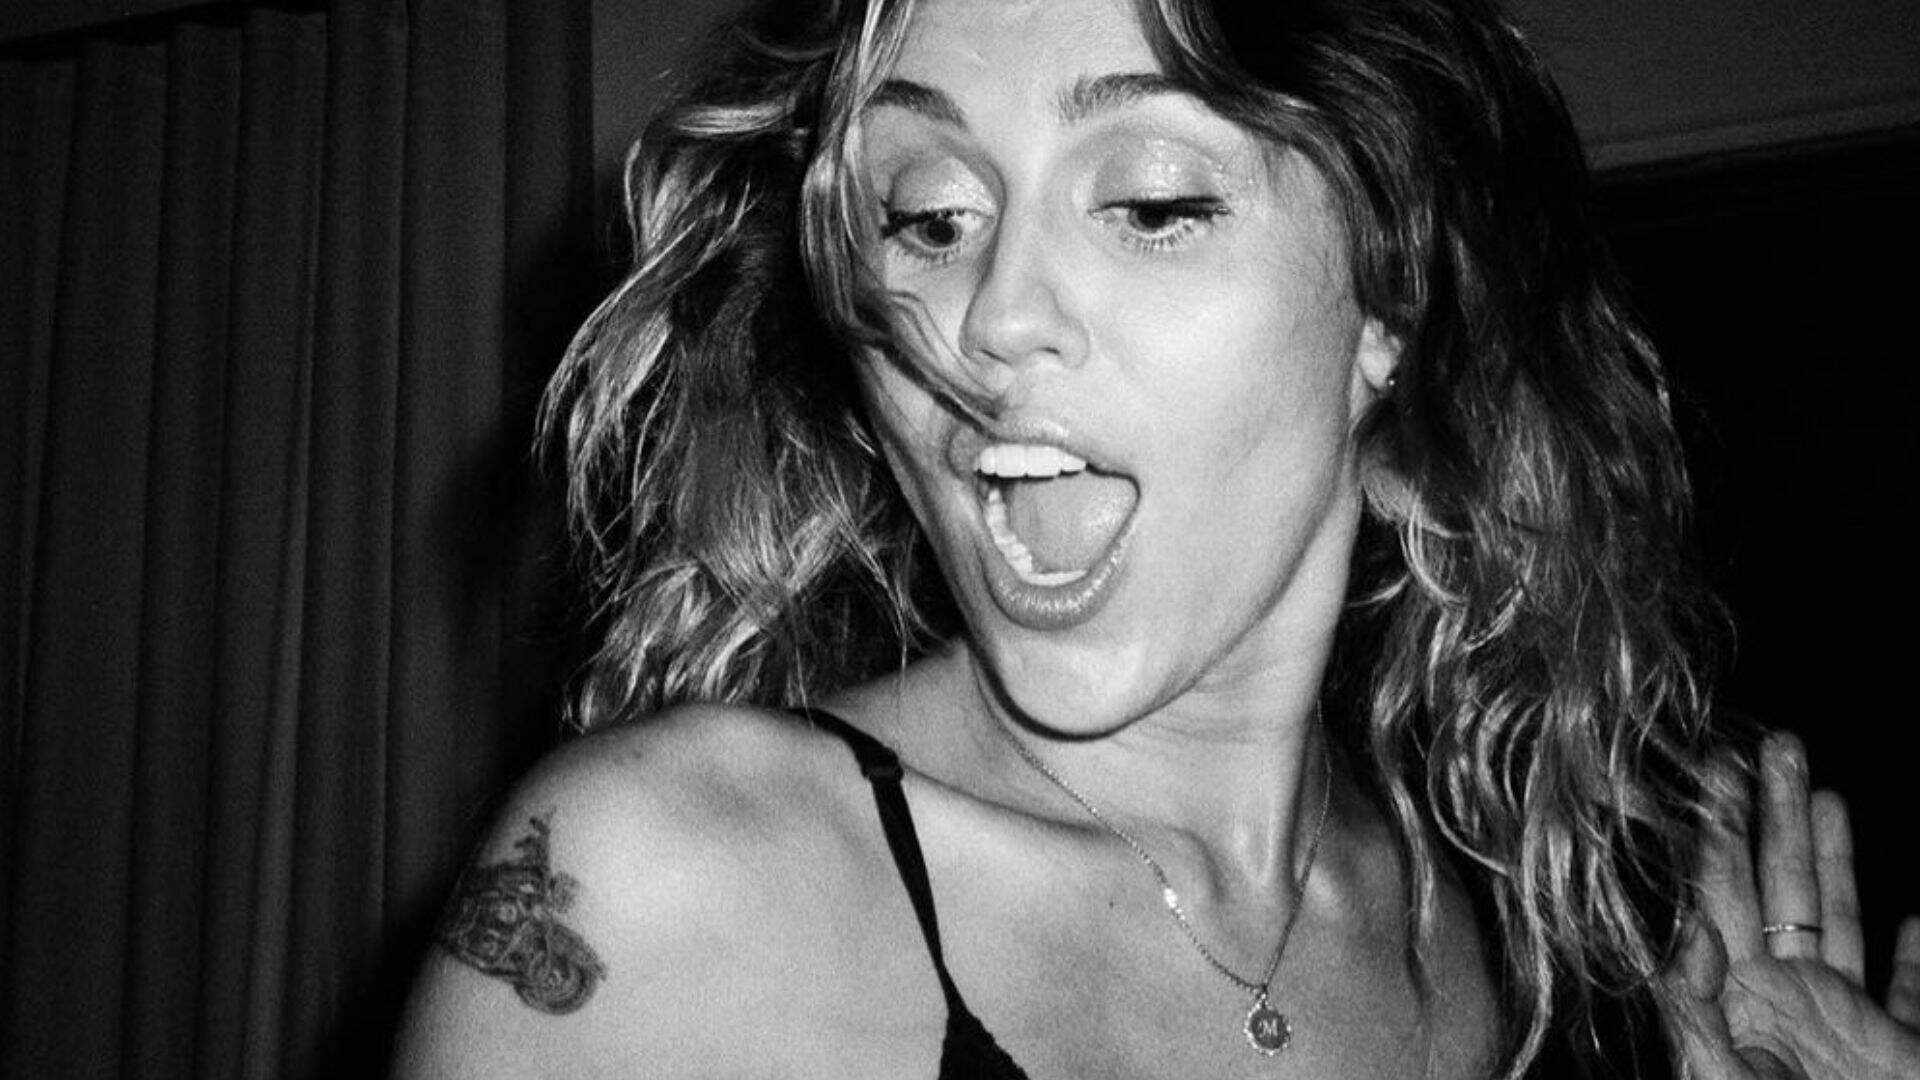 OLHA ELA! De surpresa, Miley Cyrus surge com novo visual e prova que é belíssima com qualquer tom de cabelo